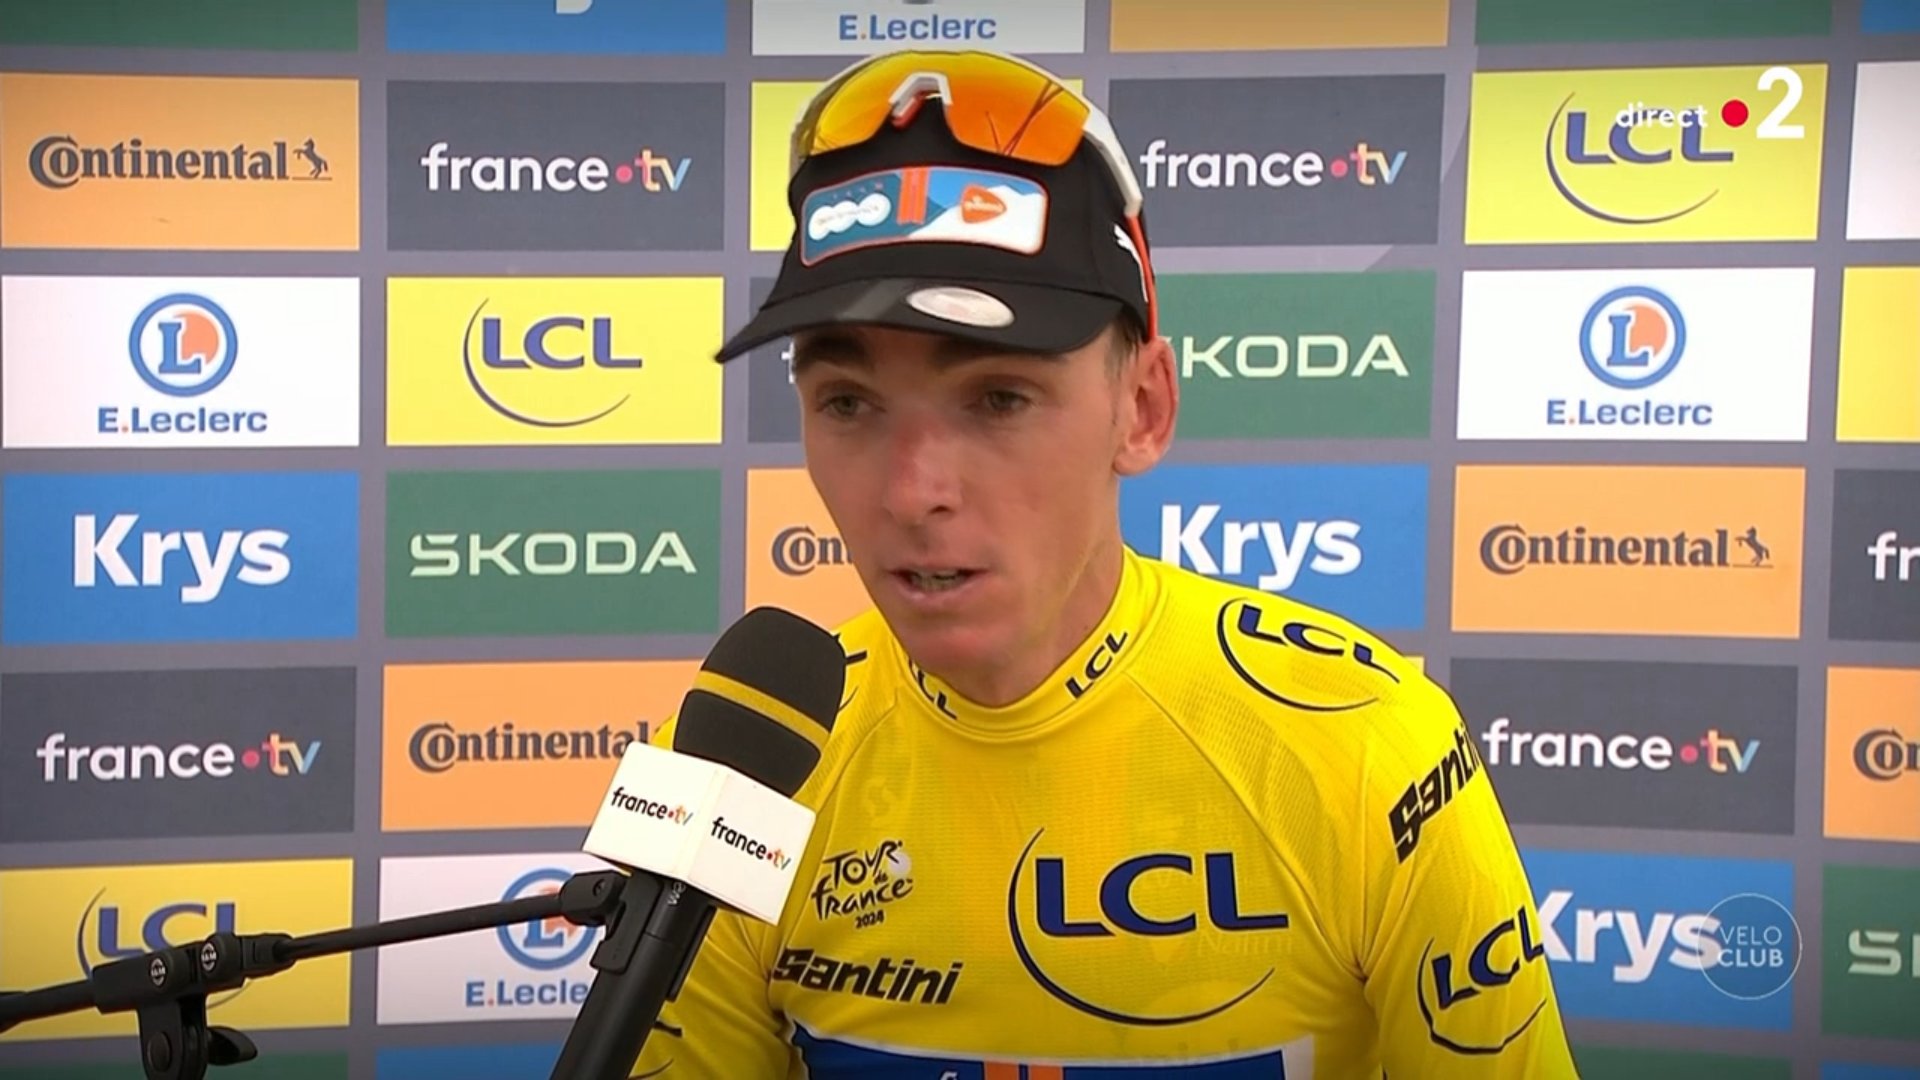 Réaction de Romain Bardet, maillot jaune après la 1ère étape du Tour de France